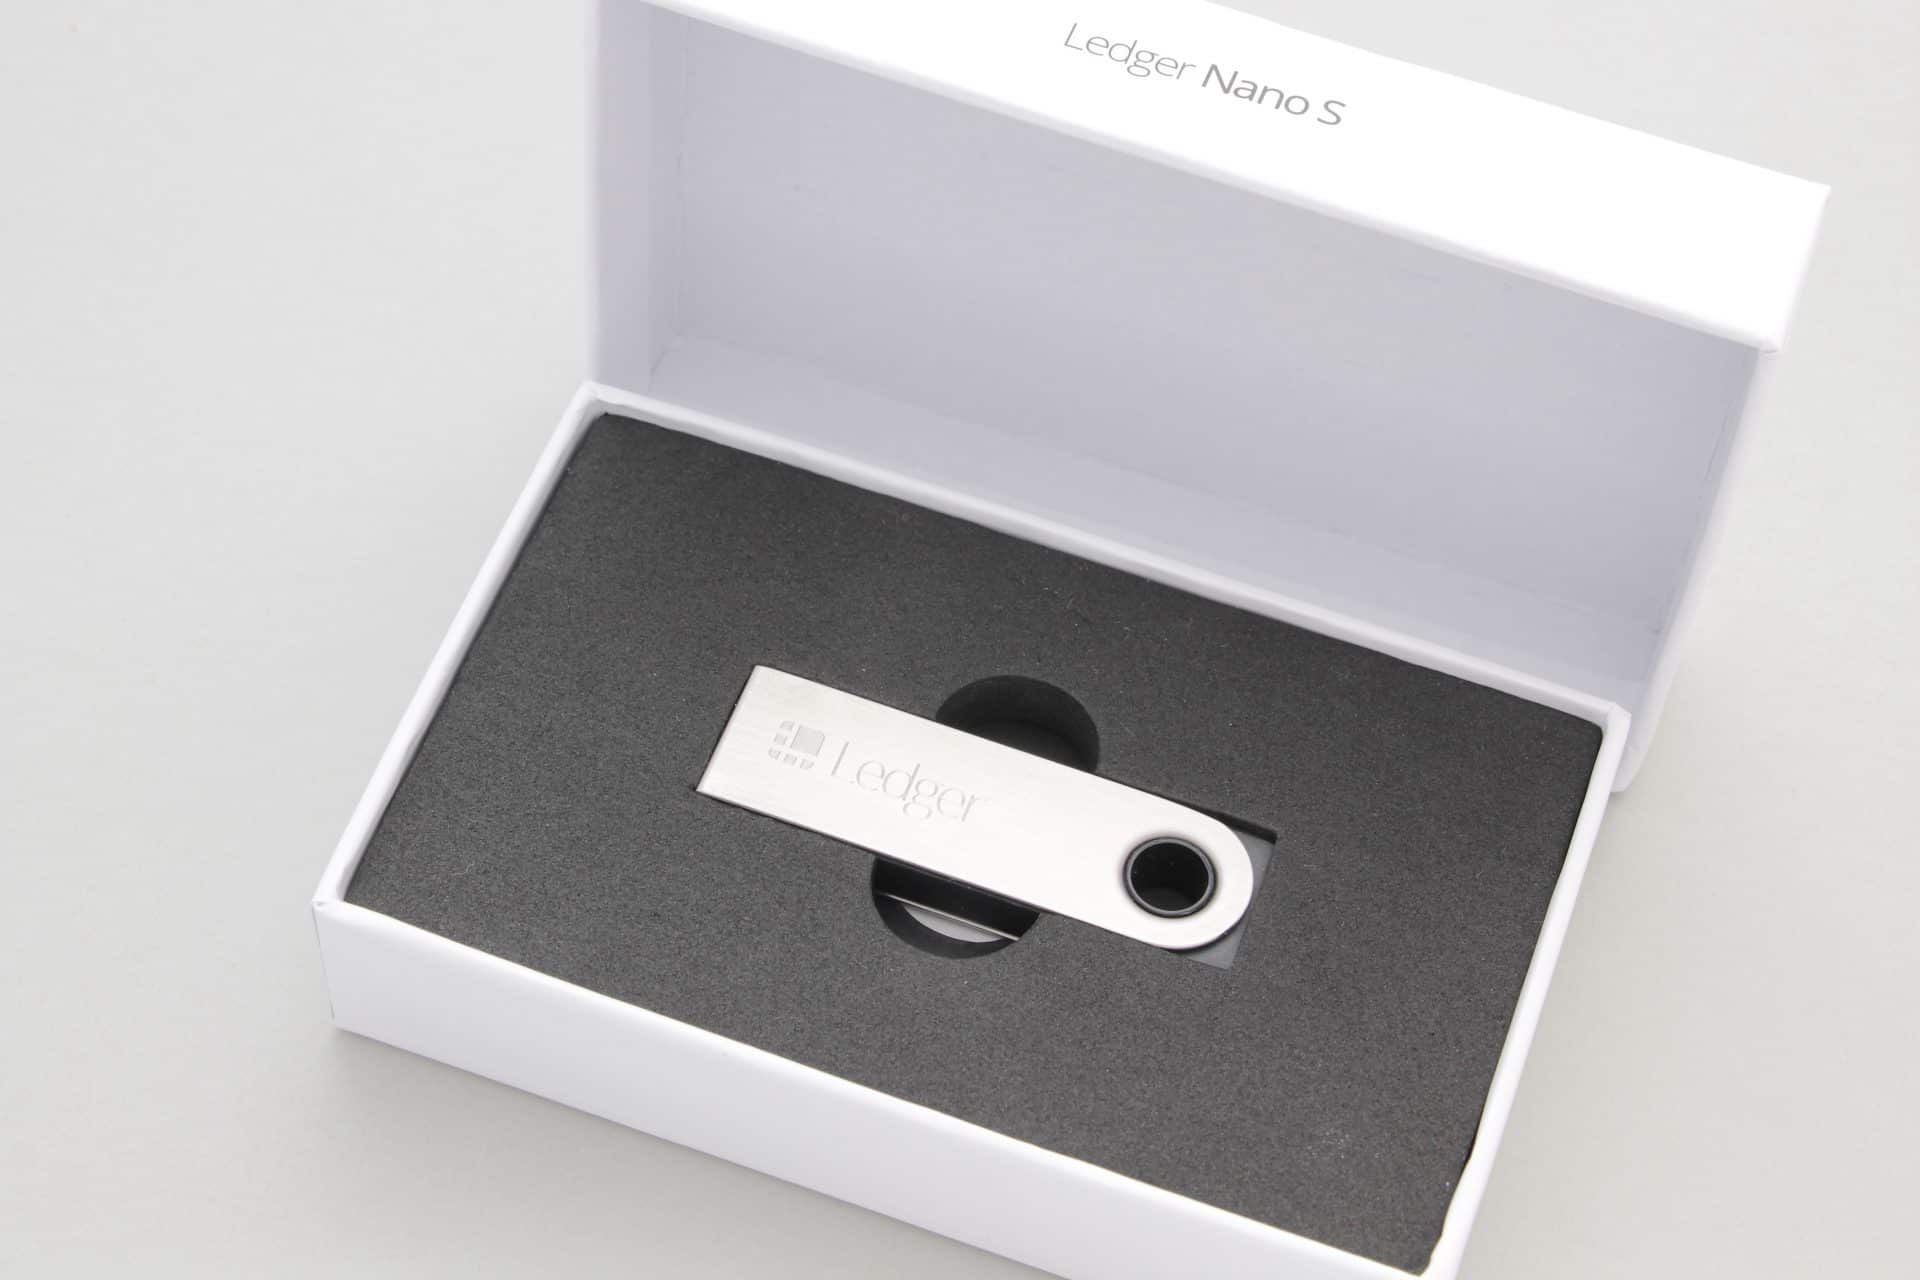 Ledger Nano S în cutia deschisă